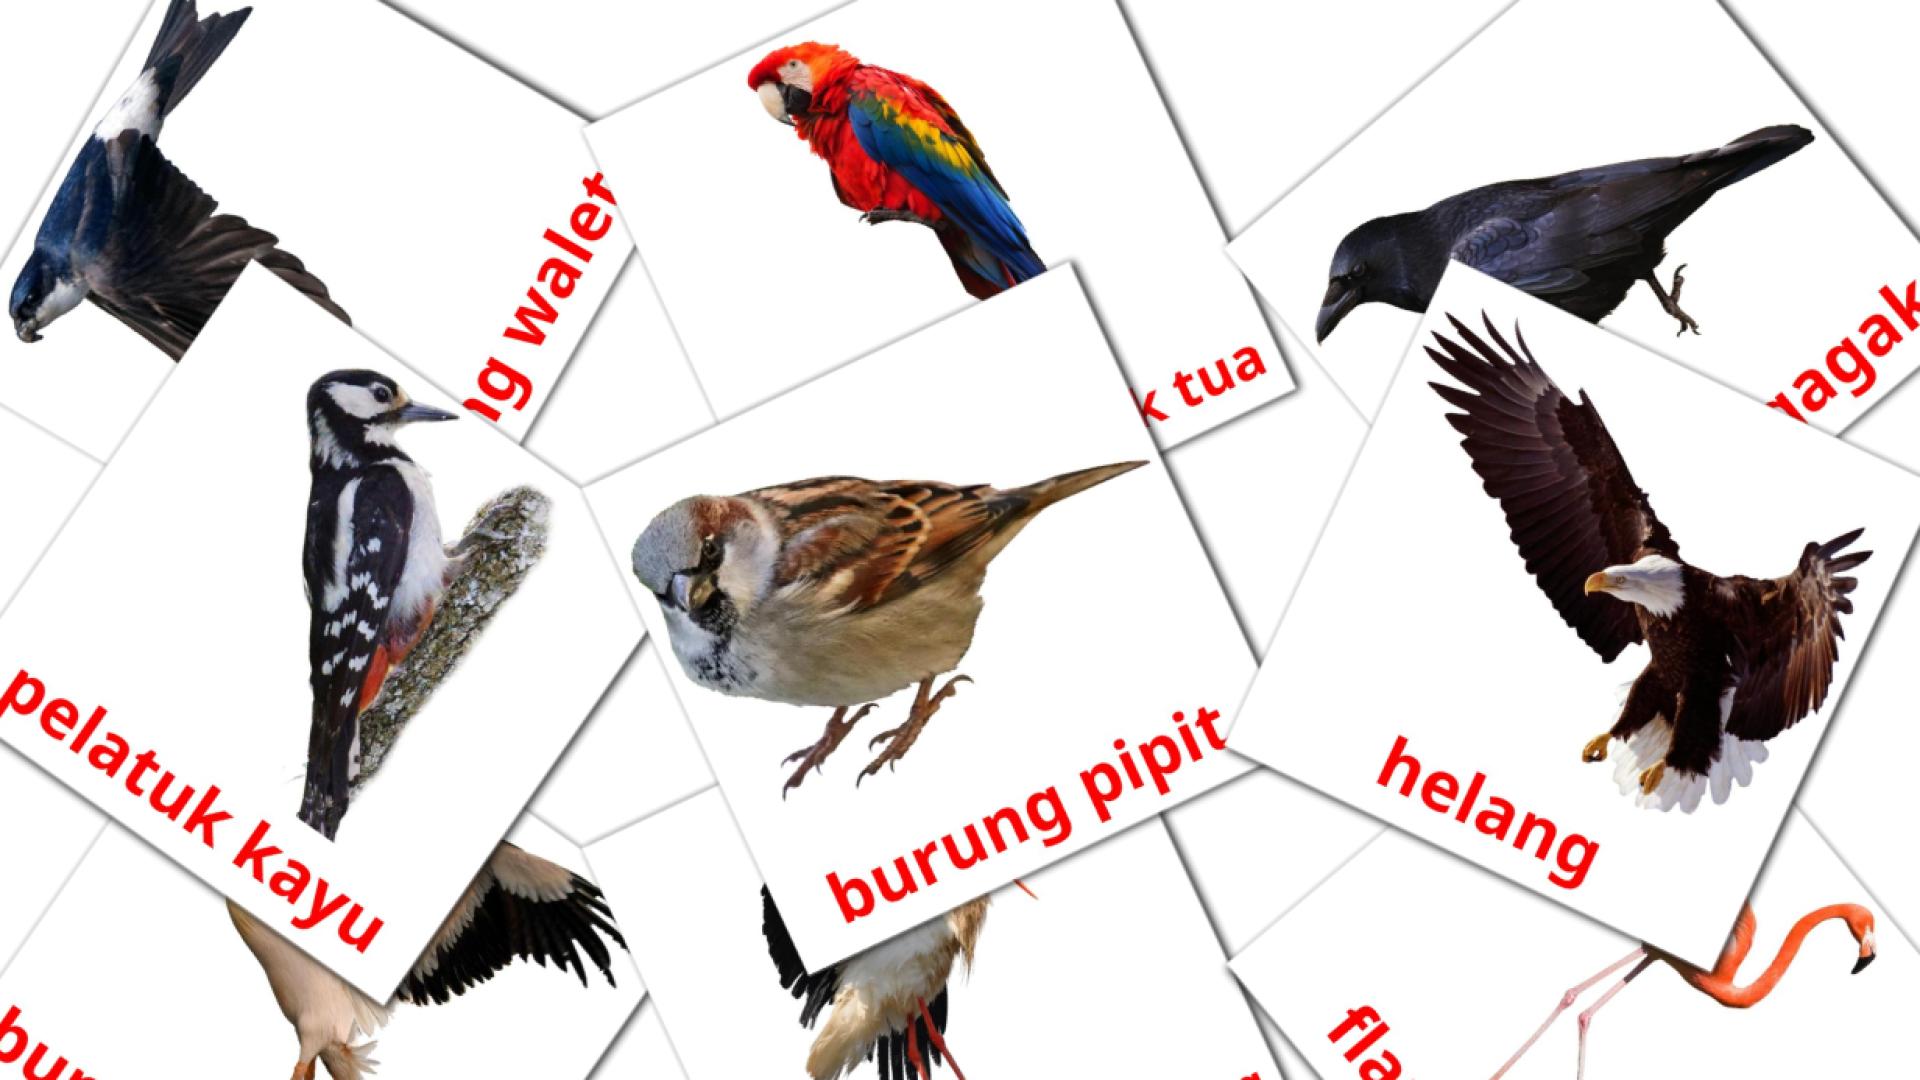 Bildkarten für burung liar